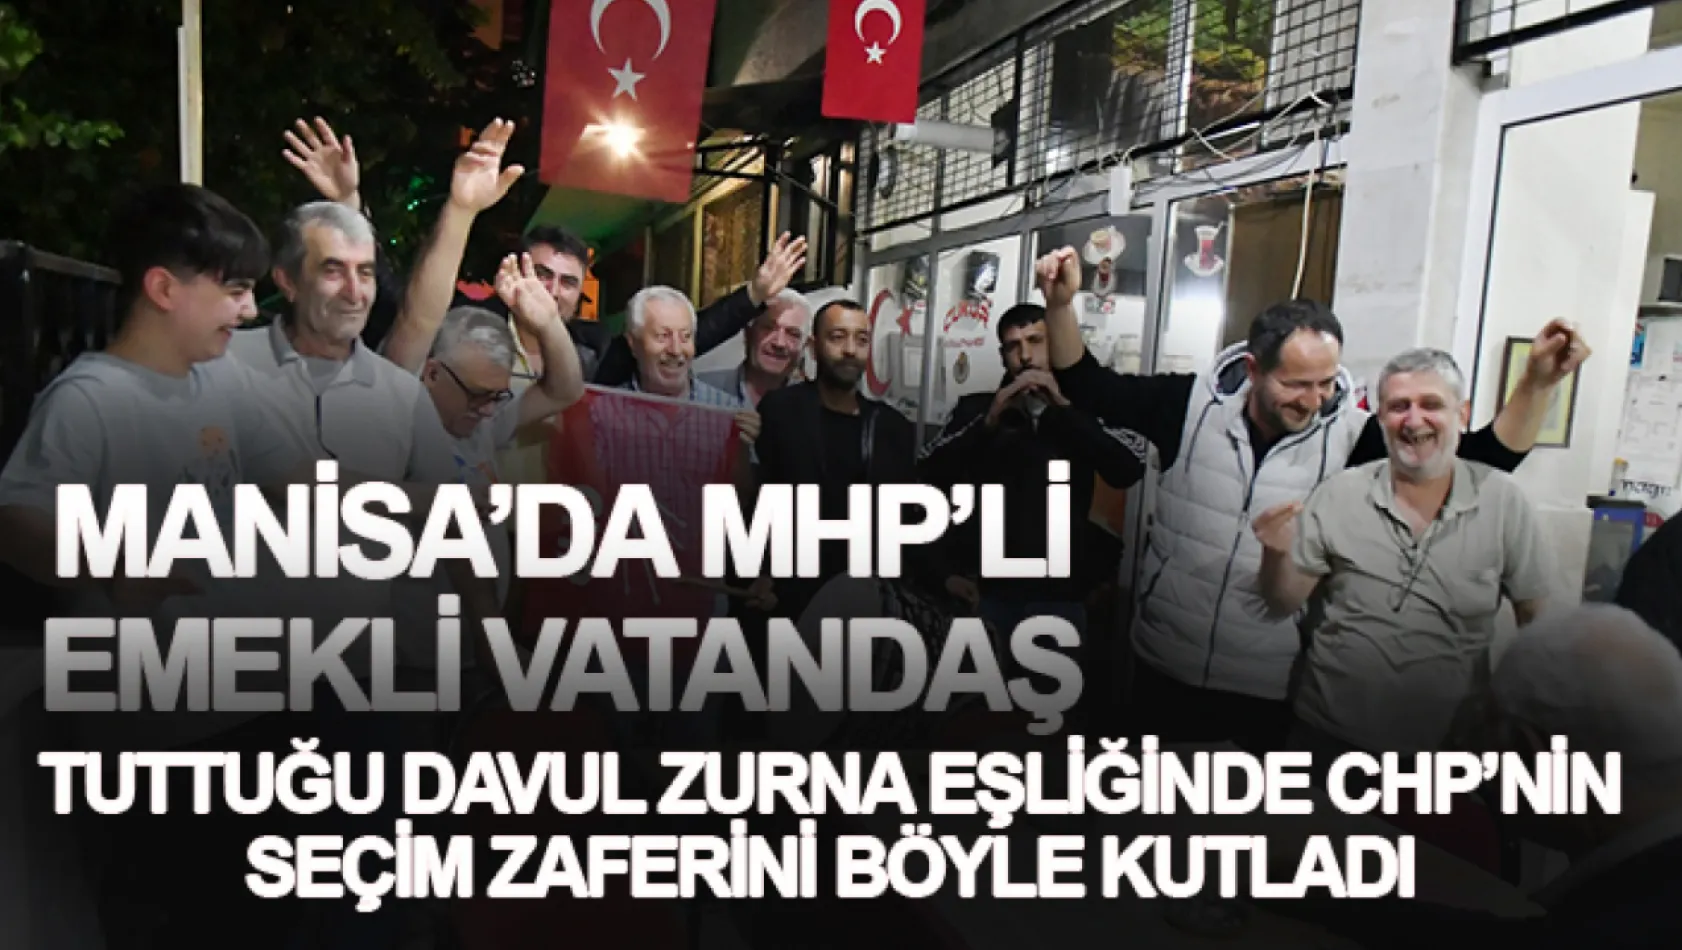 Manisa'da MHP li emekli vatandaş tuttuğu davul zurna eşliğinde CHP'nin seçim zaferini böyle kutladı